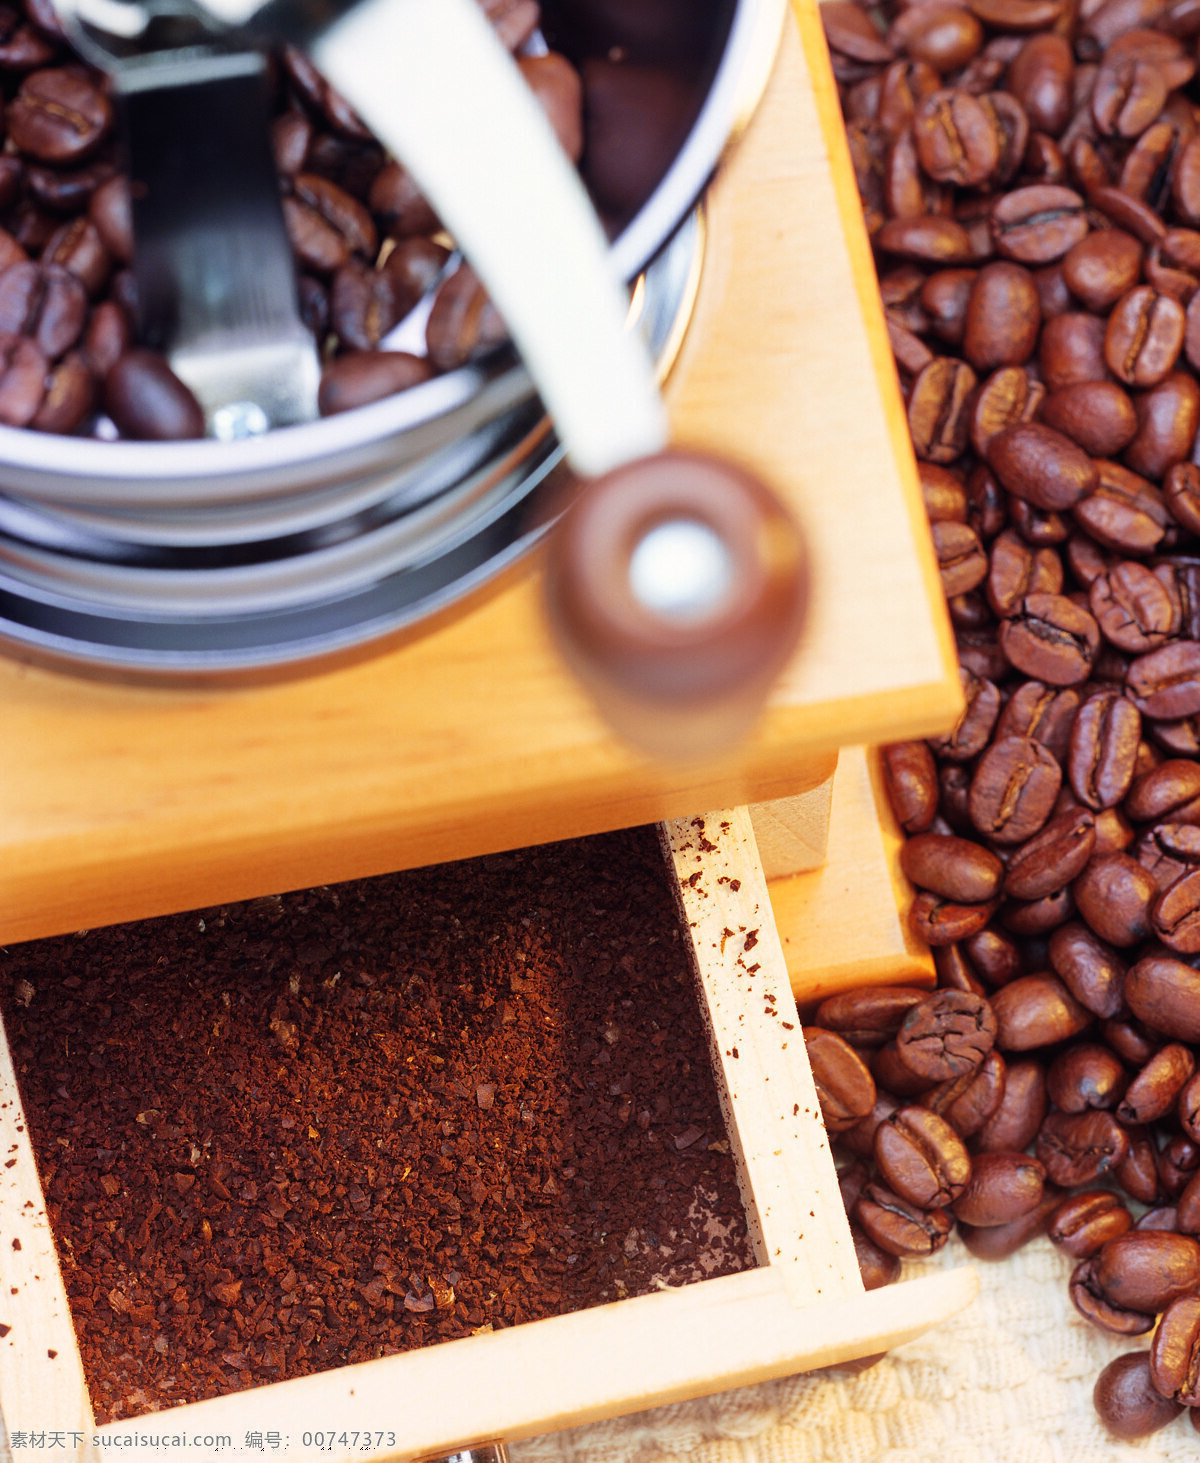 研磨机 咖啡豆 咖啡 咖啡机 颗粒 粉沫 抽屉 加工 特写 摄影图 高清图片 咖啡图片 餐饮美食